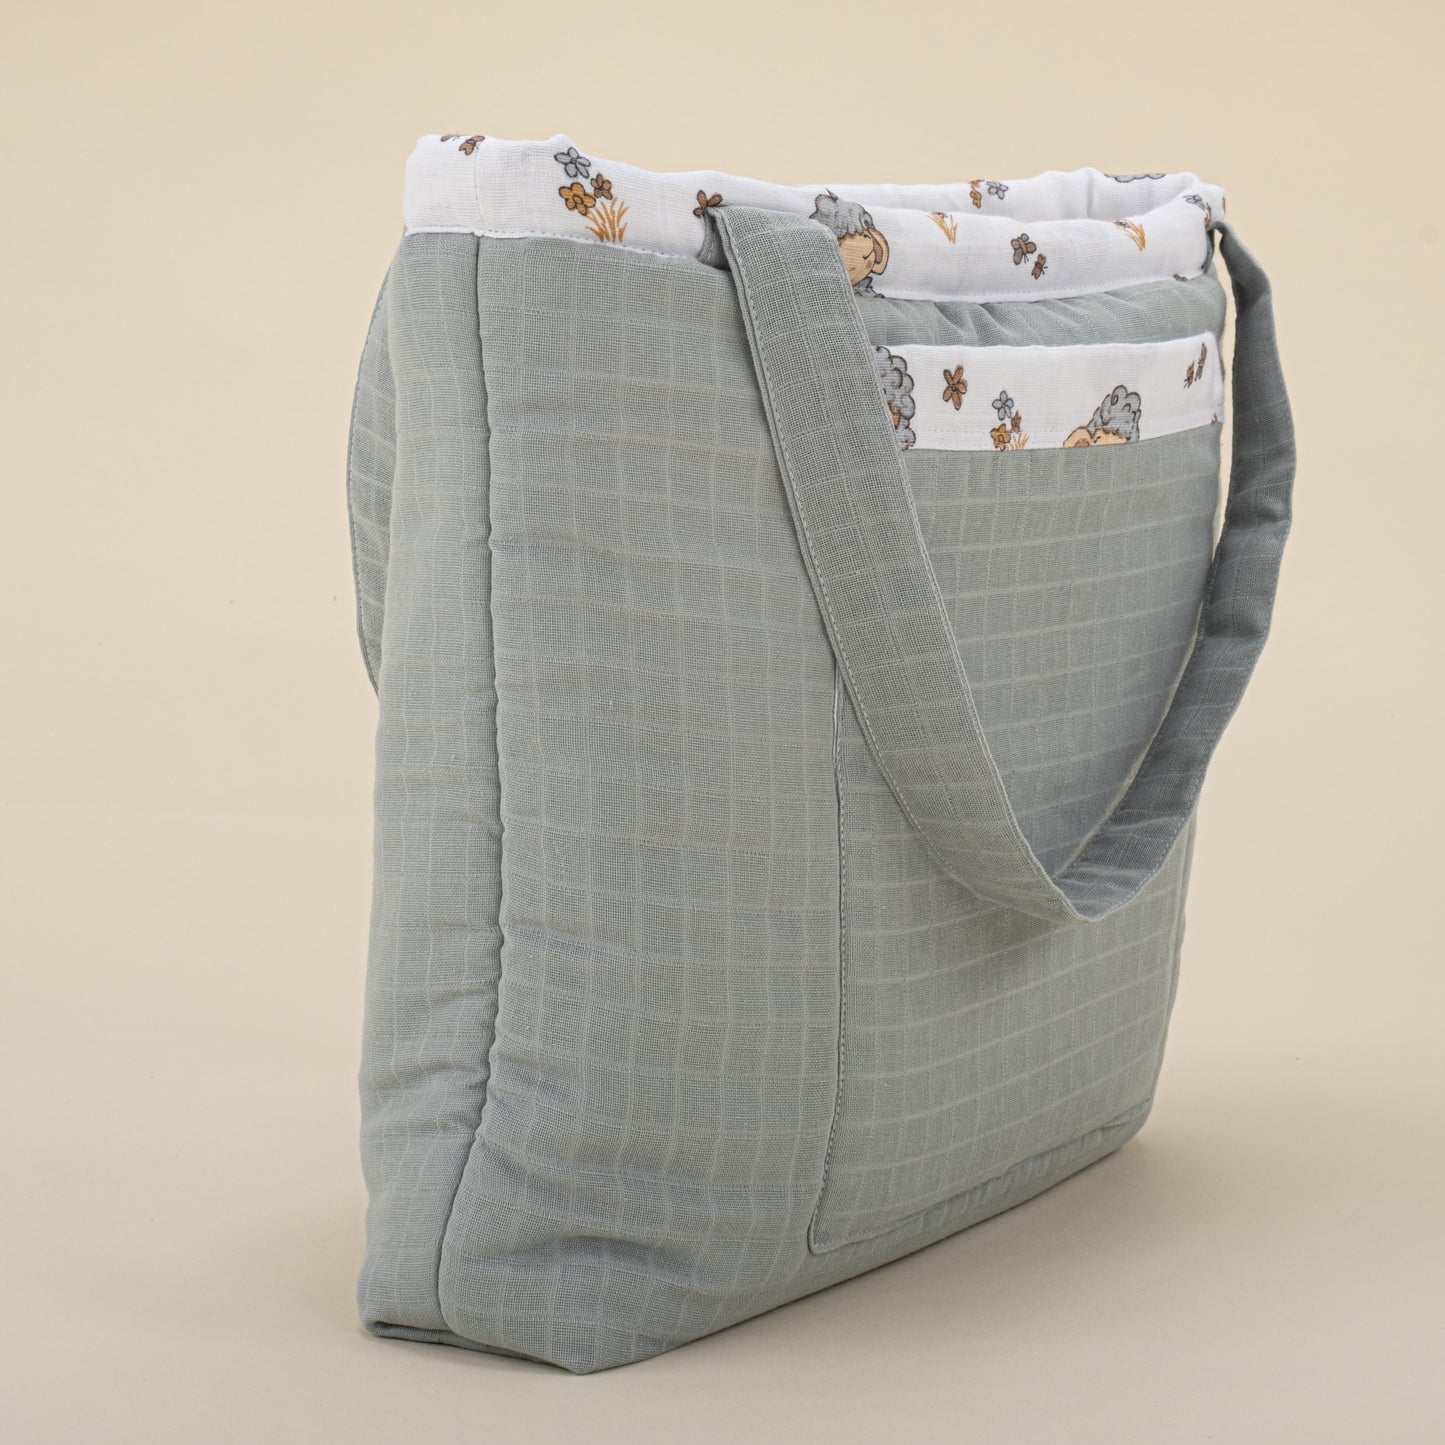 बेबी केयर बैग - तेंदुआ